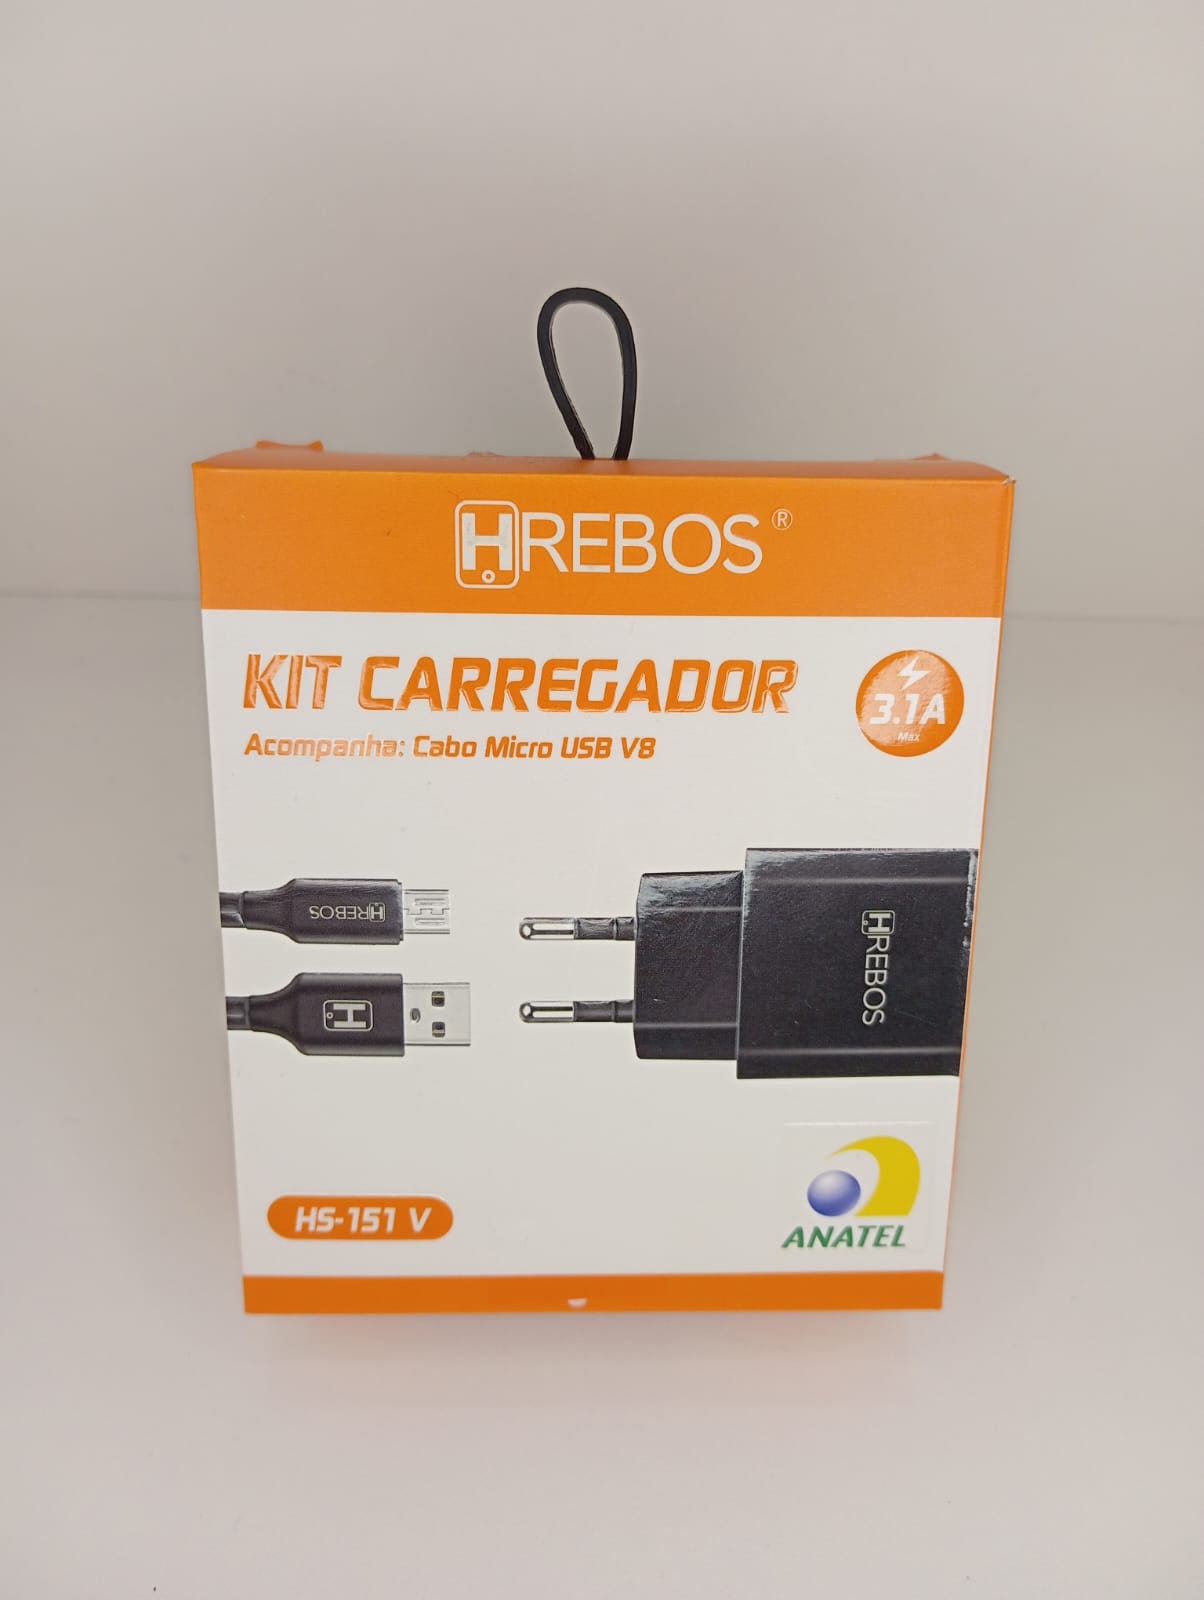 Kit Carregador Hrebos 3.1A Cabo Usb V8 Hs-151V Preto